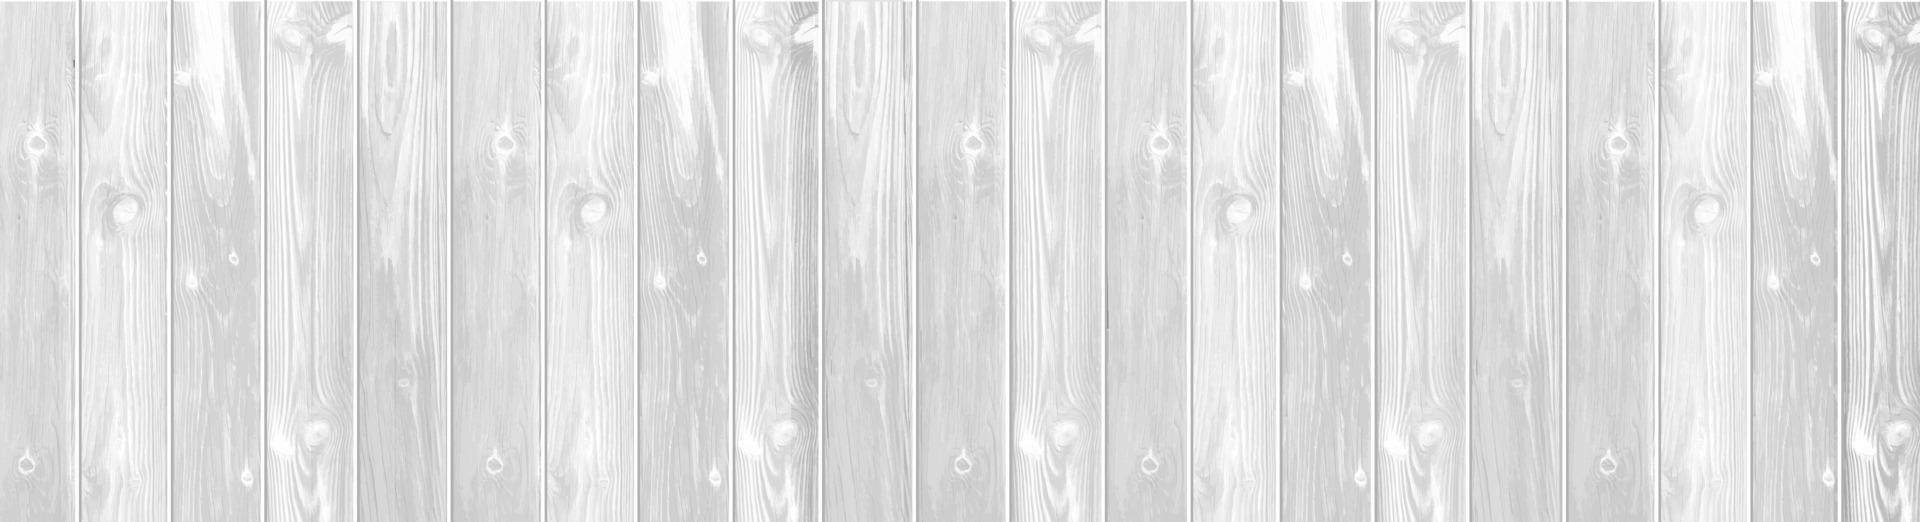 fond de planche de bois blanc vecteur